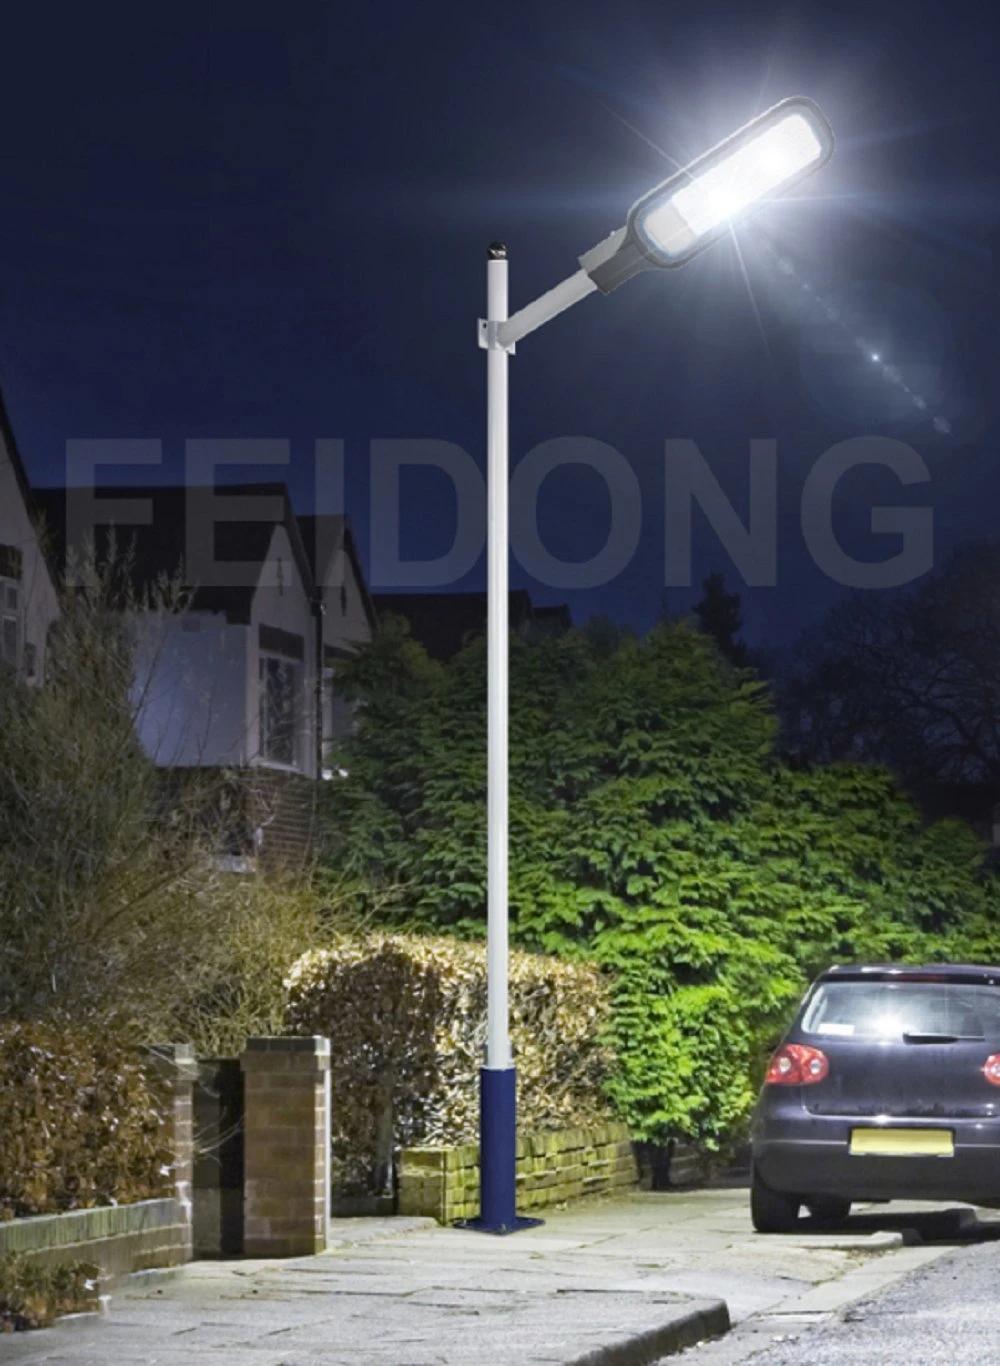 Outdoor IP65 Waterproof 50W-200W LED Street Light